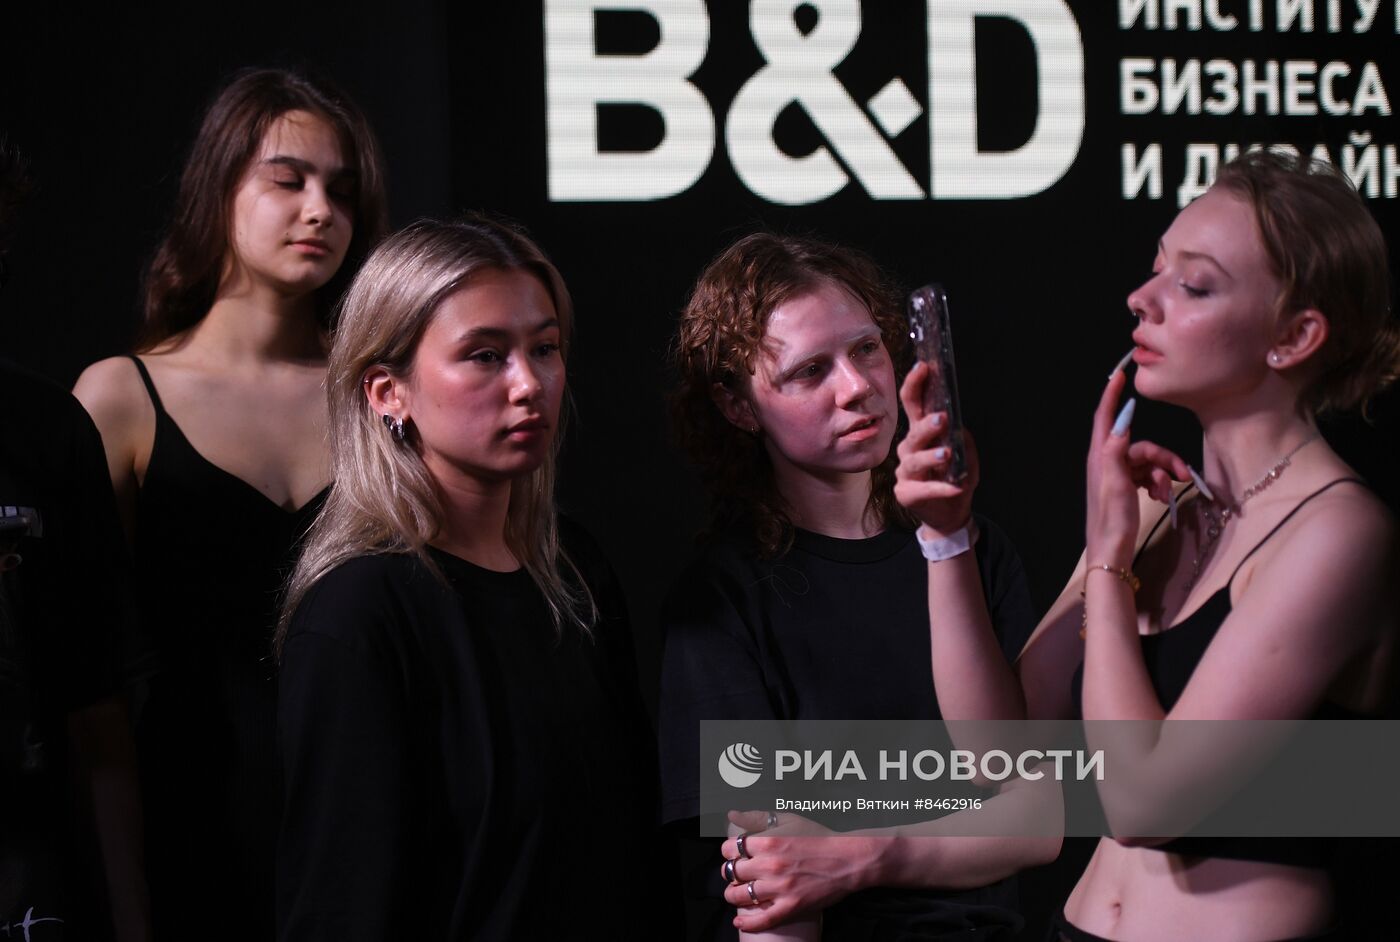 Модный показ студентов Института бизнеса и дизайна "Москва - любовь моя"